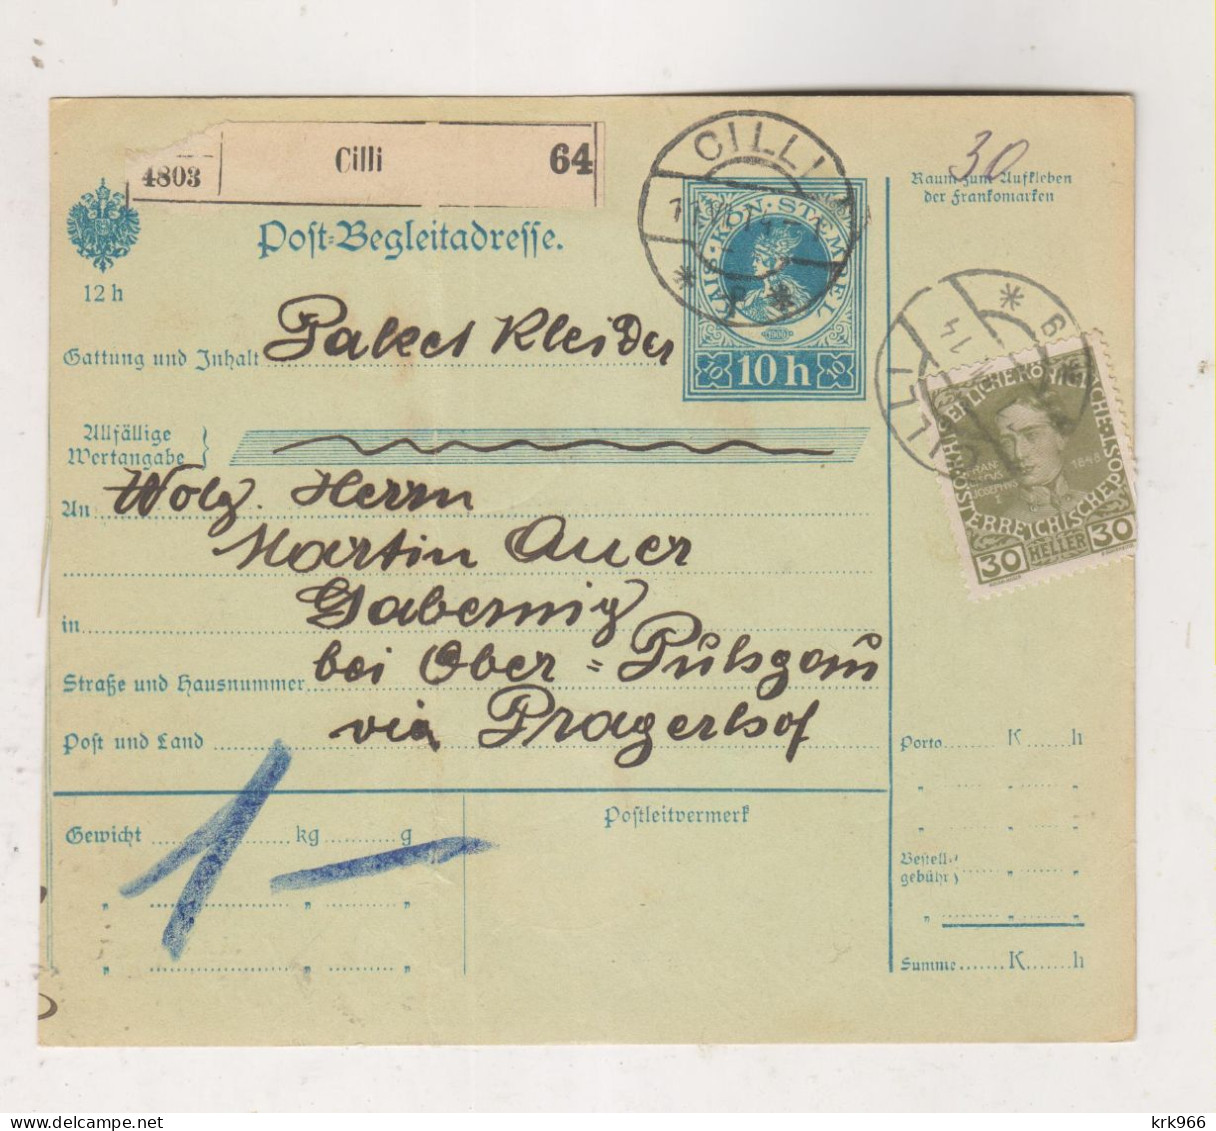 SLOVENIA,Austria 1914 CELJE CILLI  Parcel Card - Slowenien